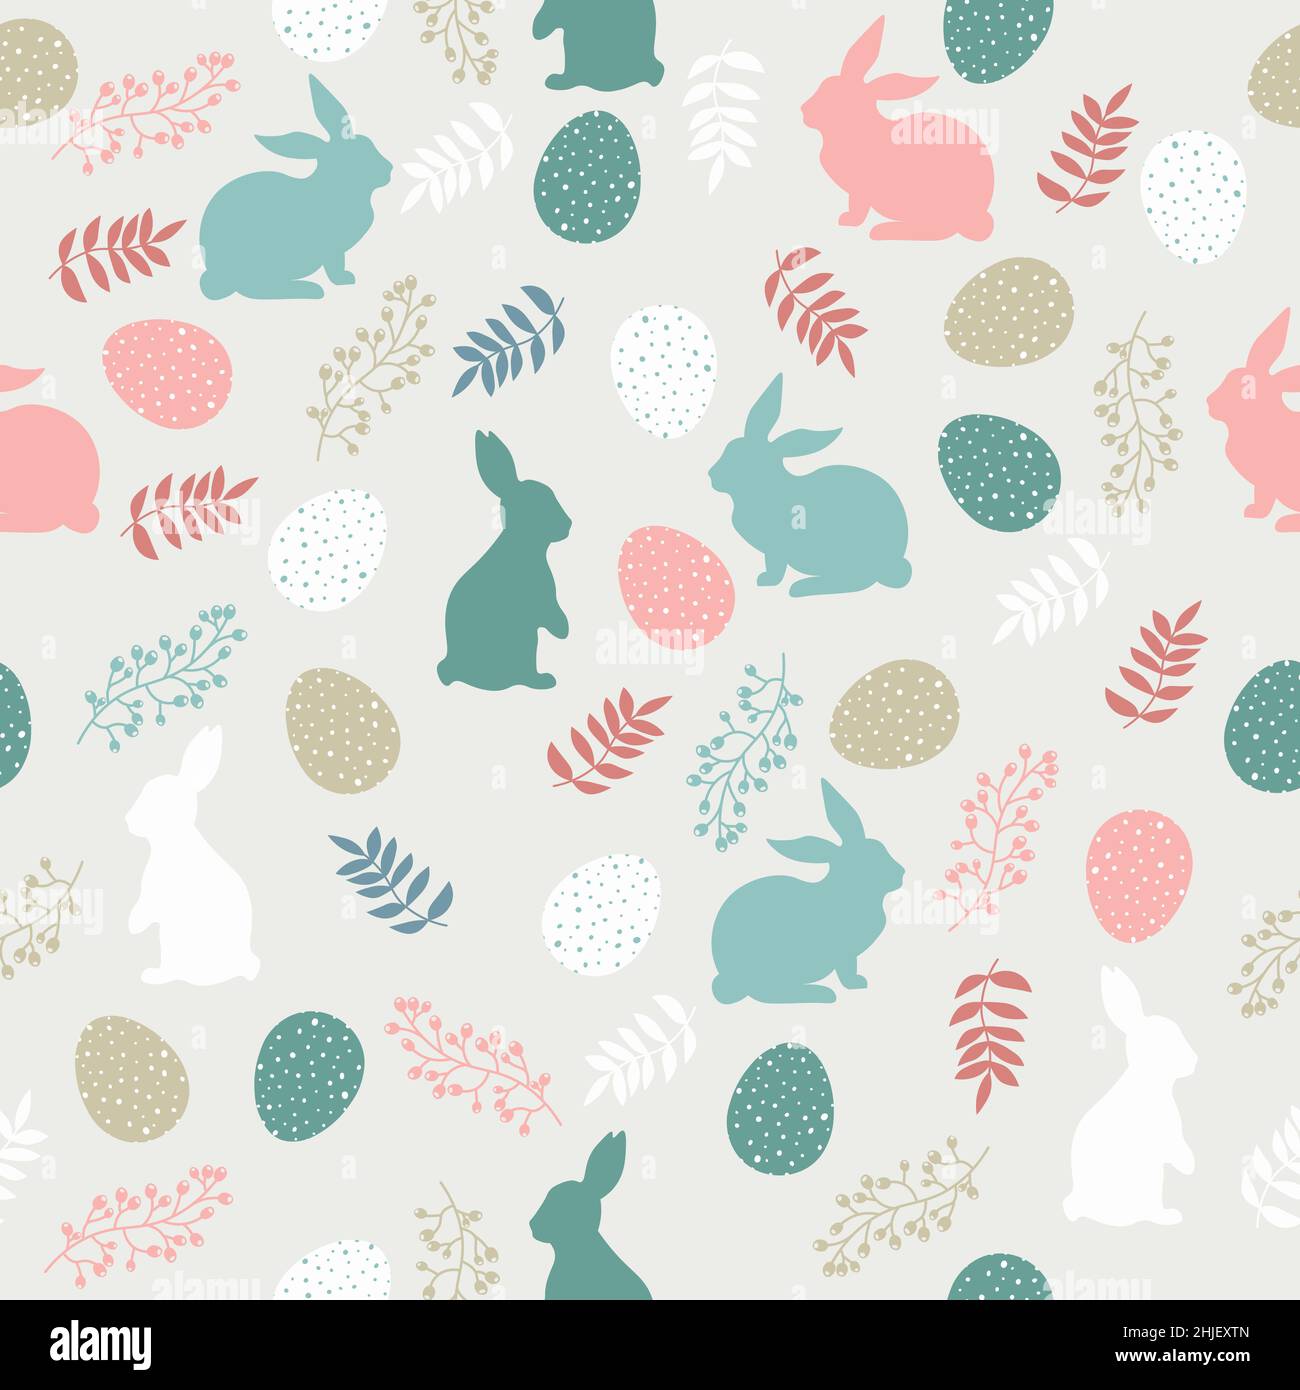 Ostermuster mit Eiern, Hasen und Blumen in Pastellfarben. Nahtlose Beziehung für dein Design. Design für Titel für die Website, Banner, Poster, Karte Stock Vektor